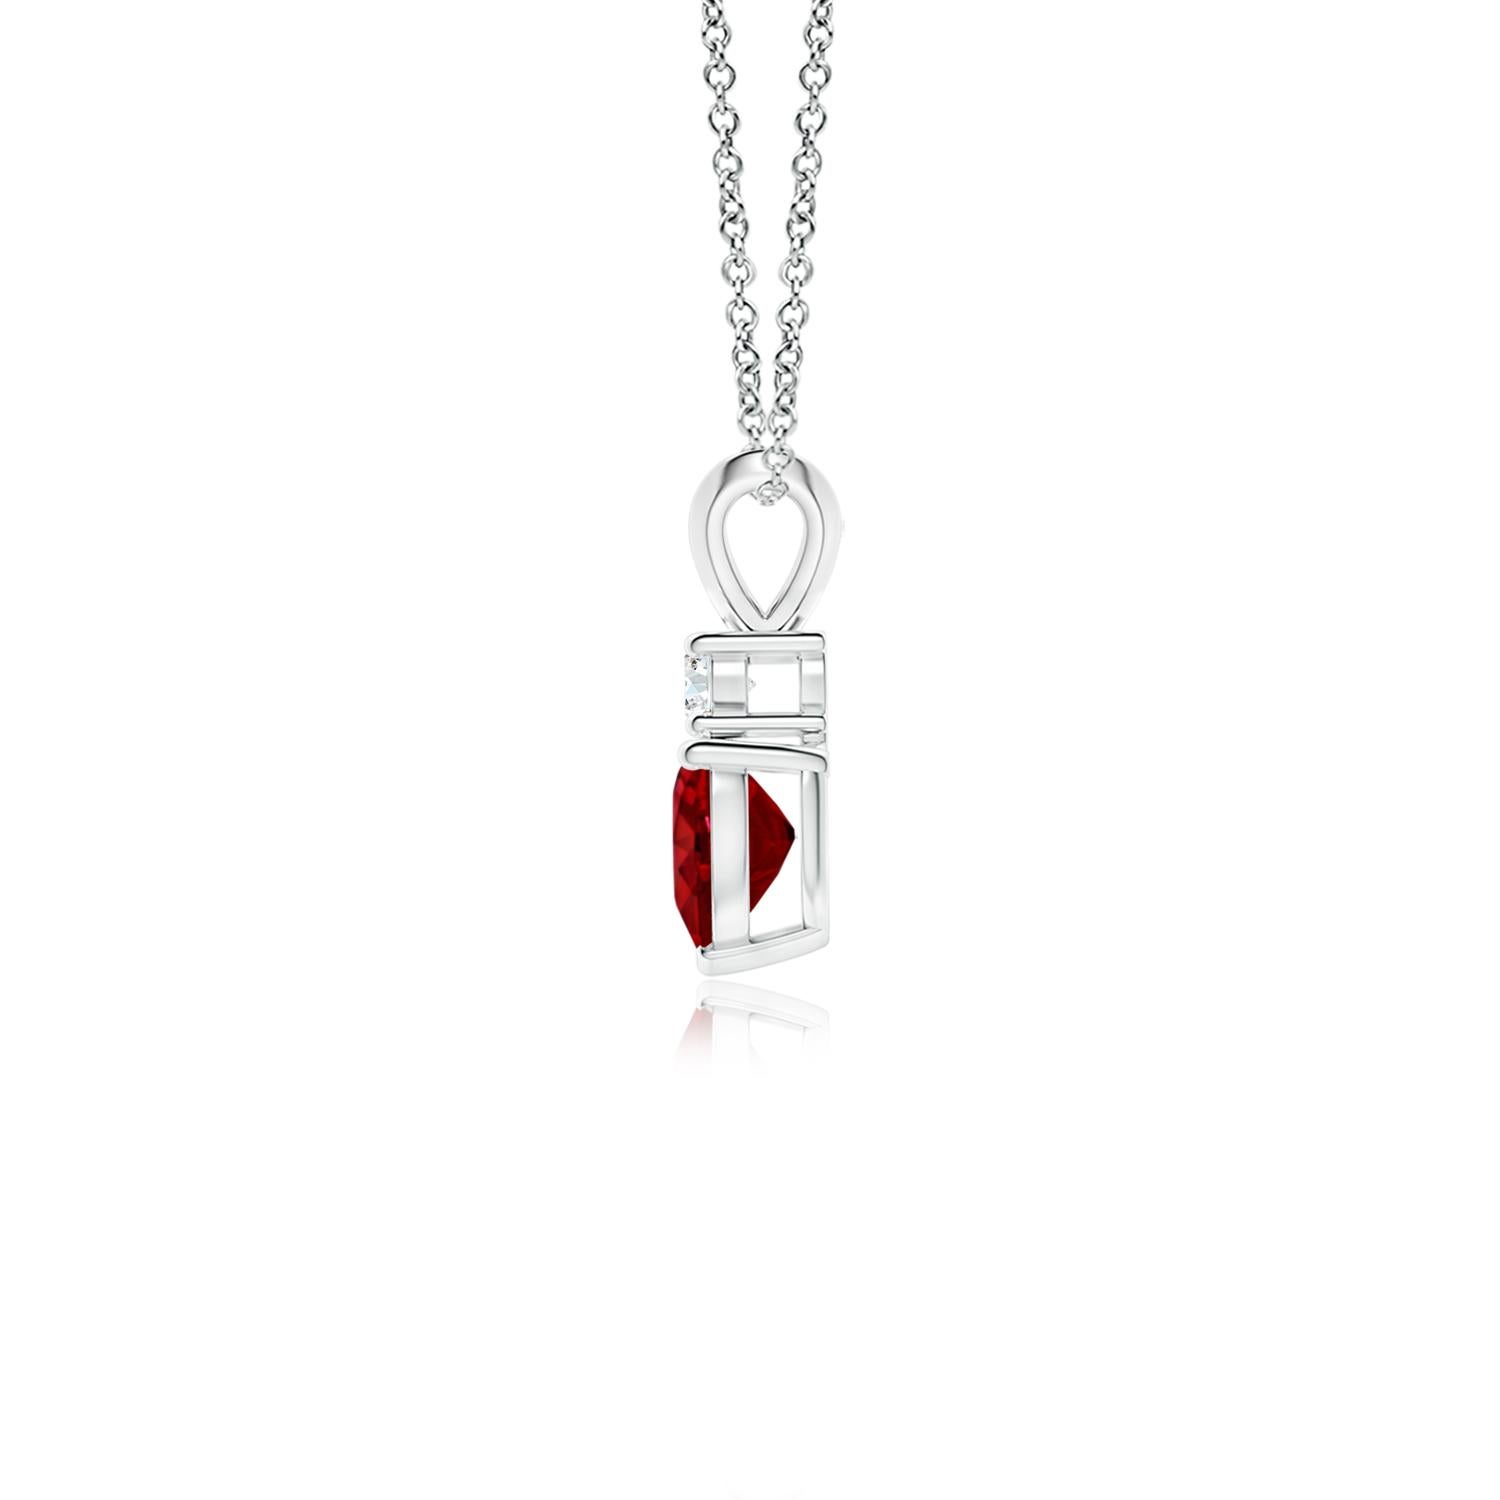 Dieser herzförmige Rubin-Anhänger aus Platin ist ein schönes Symbol der Liebe. Der kühne rote Edelstein wird von einem glitzernden runden Diamanten gekrönt und ist mit einem Kaninchenohrbündel verbunden.
Der Rubin ist der Geburtsstein des Monats